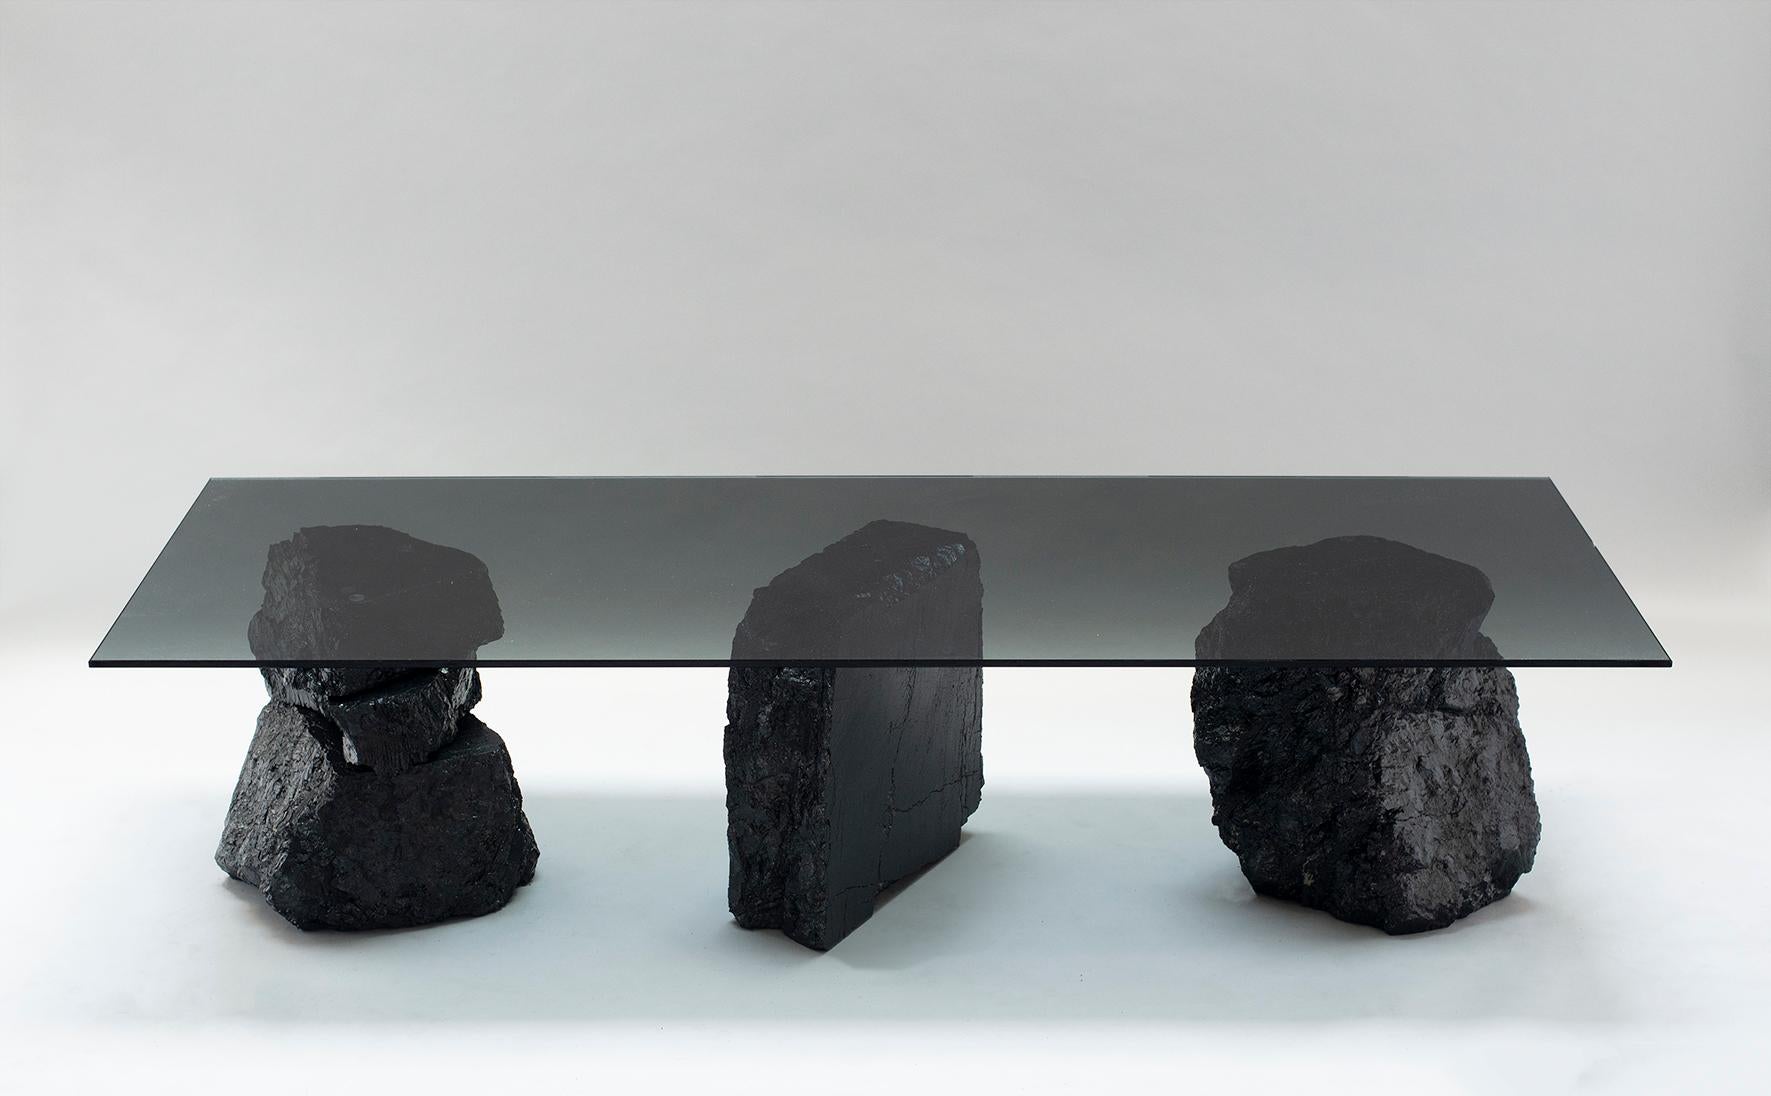 Table basse 019 de Jesper Eriksson
Dimensions : D180 x L60 x H45 cm 
MATERIAL : Charbon anthracite, verre trempé
Poids : 105 kg

Jesper Eriksson (né en 1990 à Paris) est un artiste et un designer basé à Londres, qui s'intéresse au travail lié à